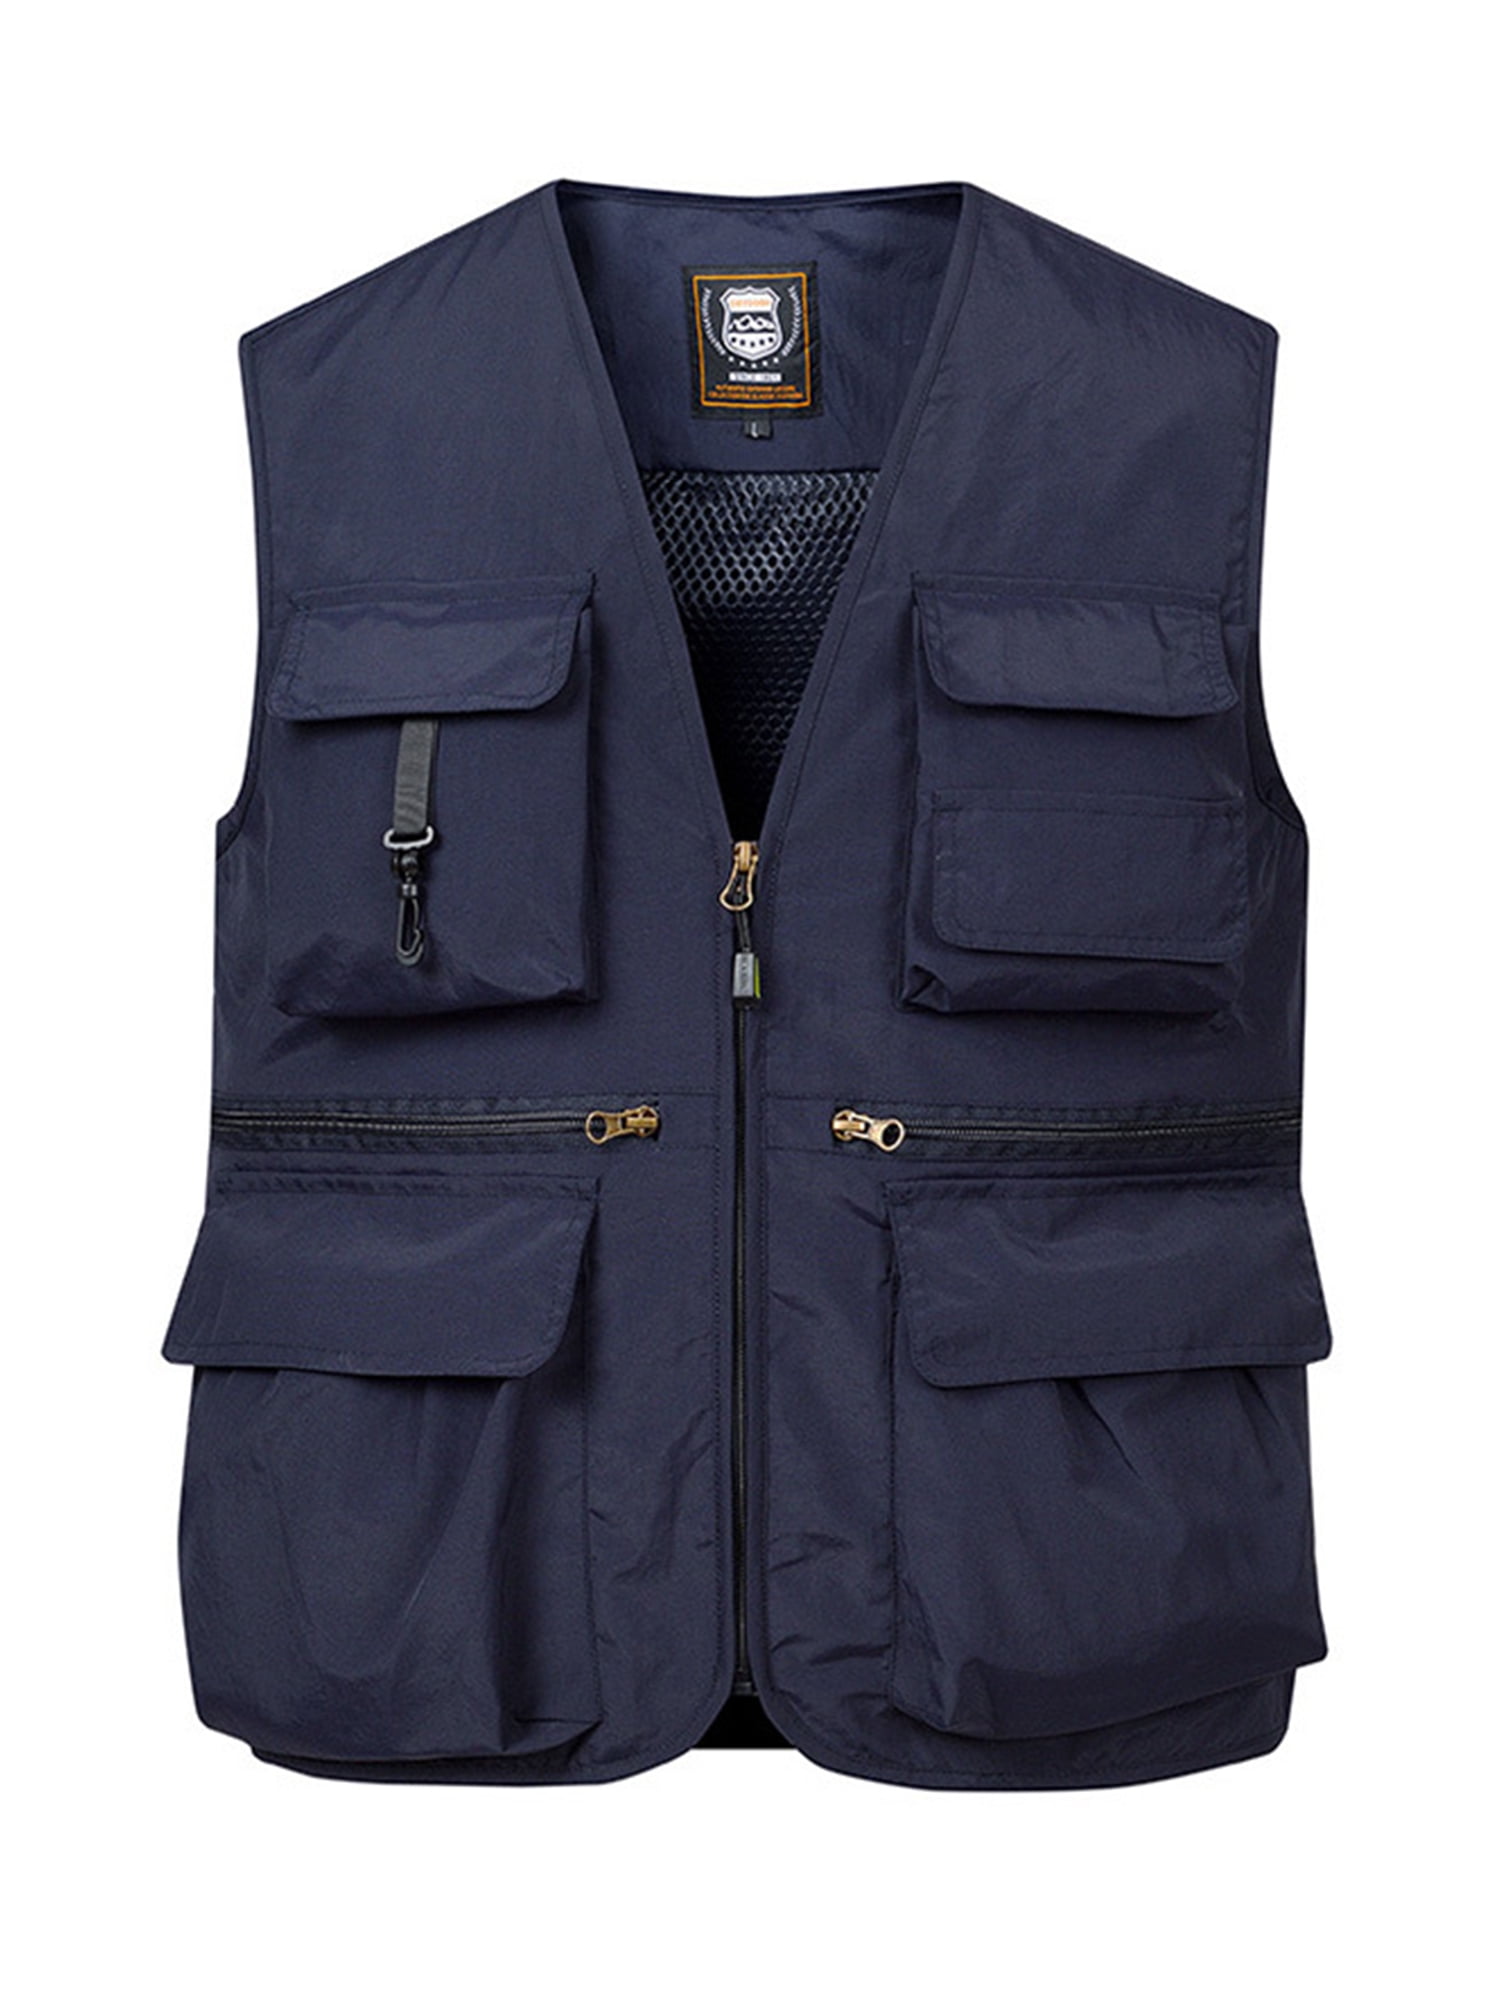 Sottozero Work Vest Fishing Vest Outdoor Vest Men's Gilet Star Black Beige  Blue Grey S-XXXL - Blue - Large - ShopStyle Jackets